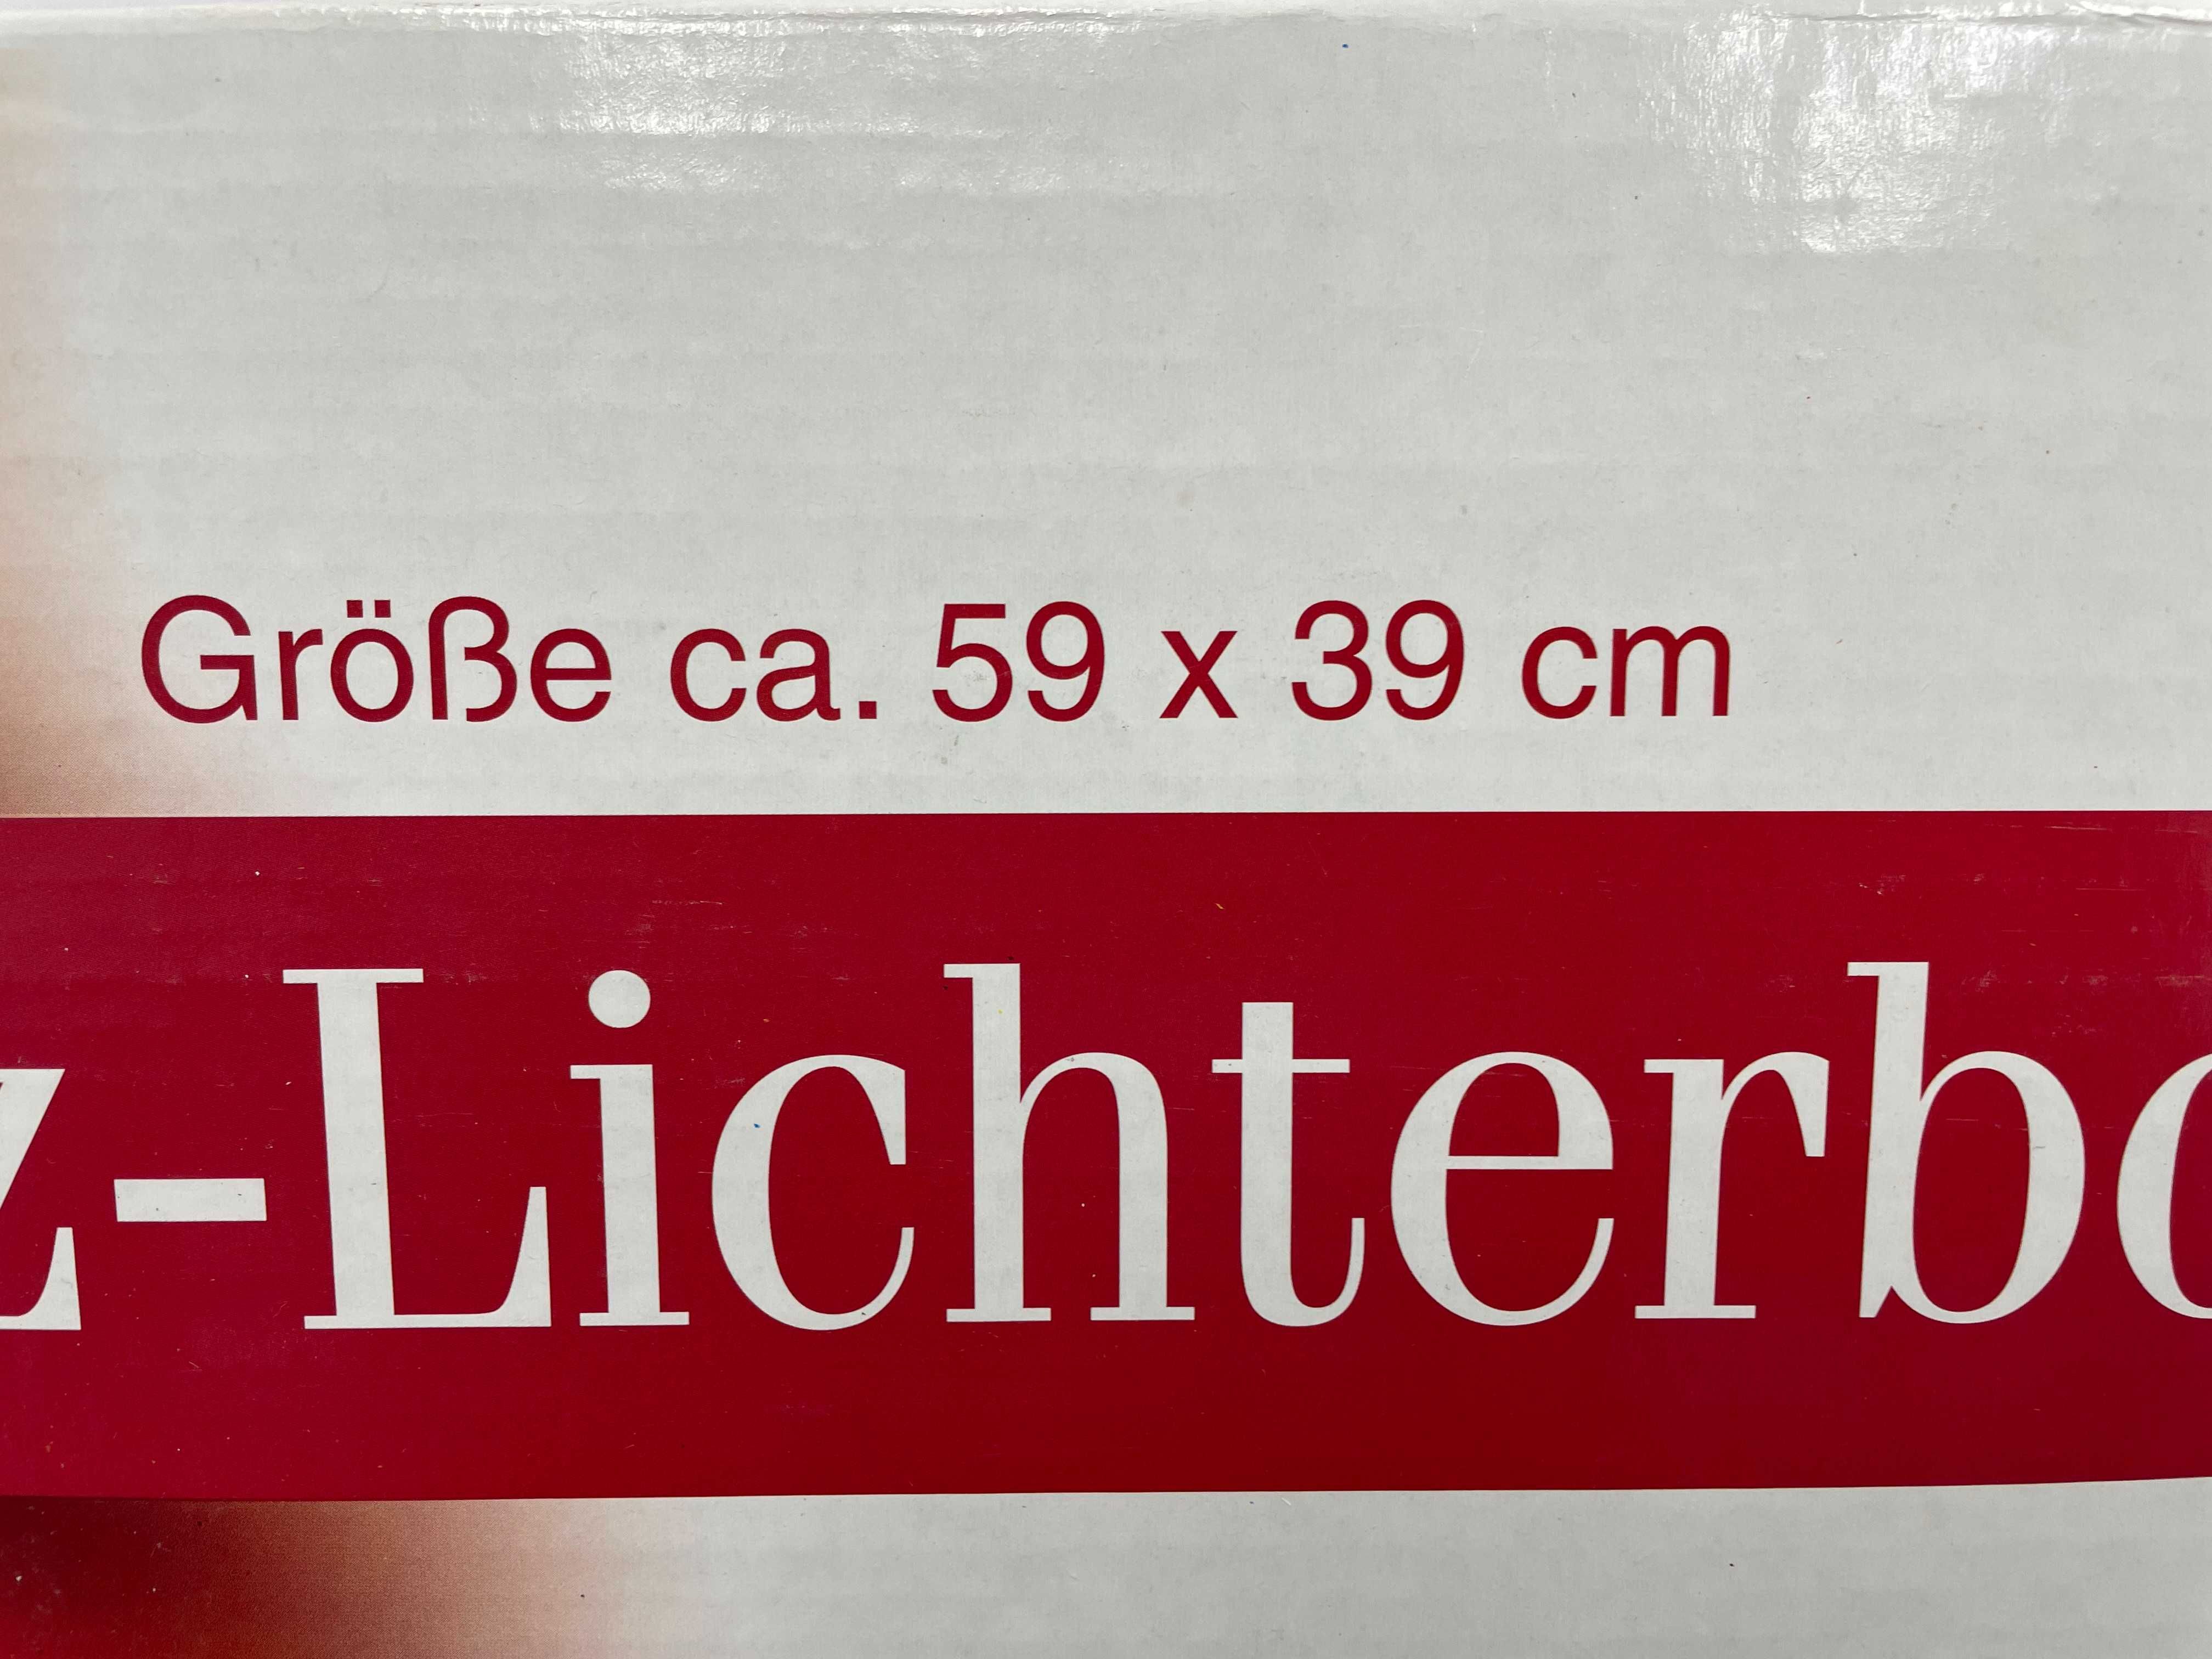 Dekoracja świetlna firmy Lichterbogen